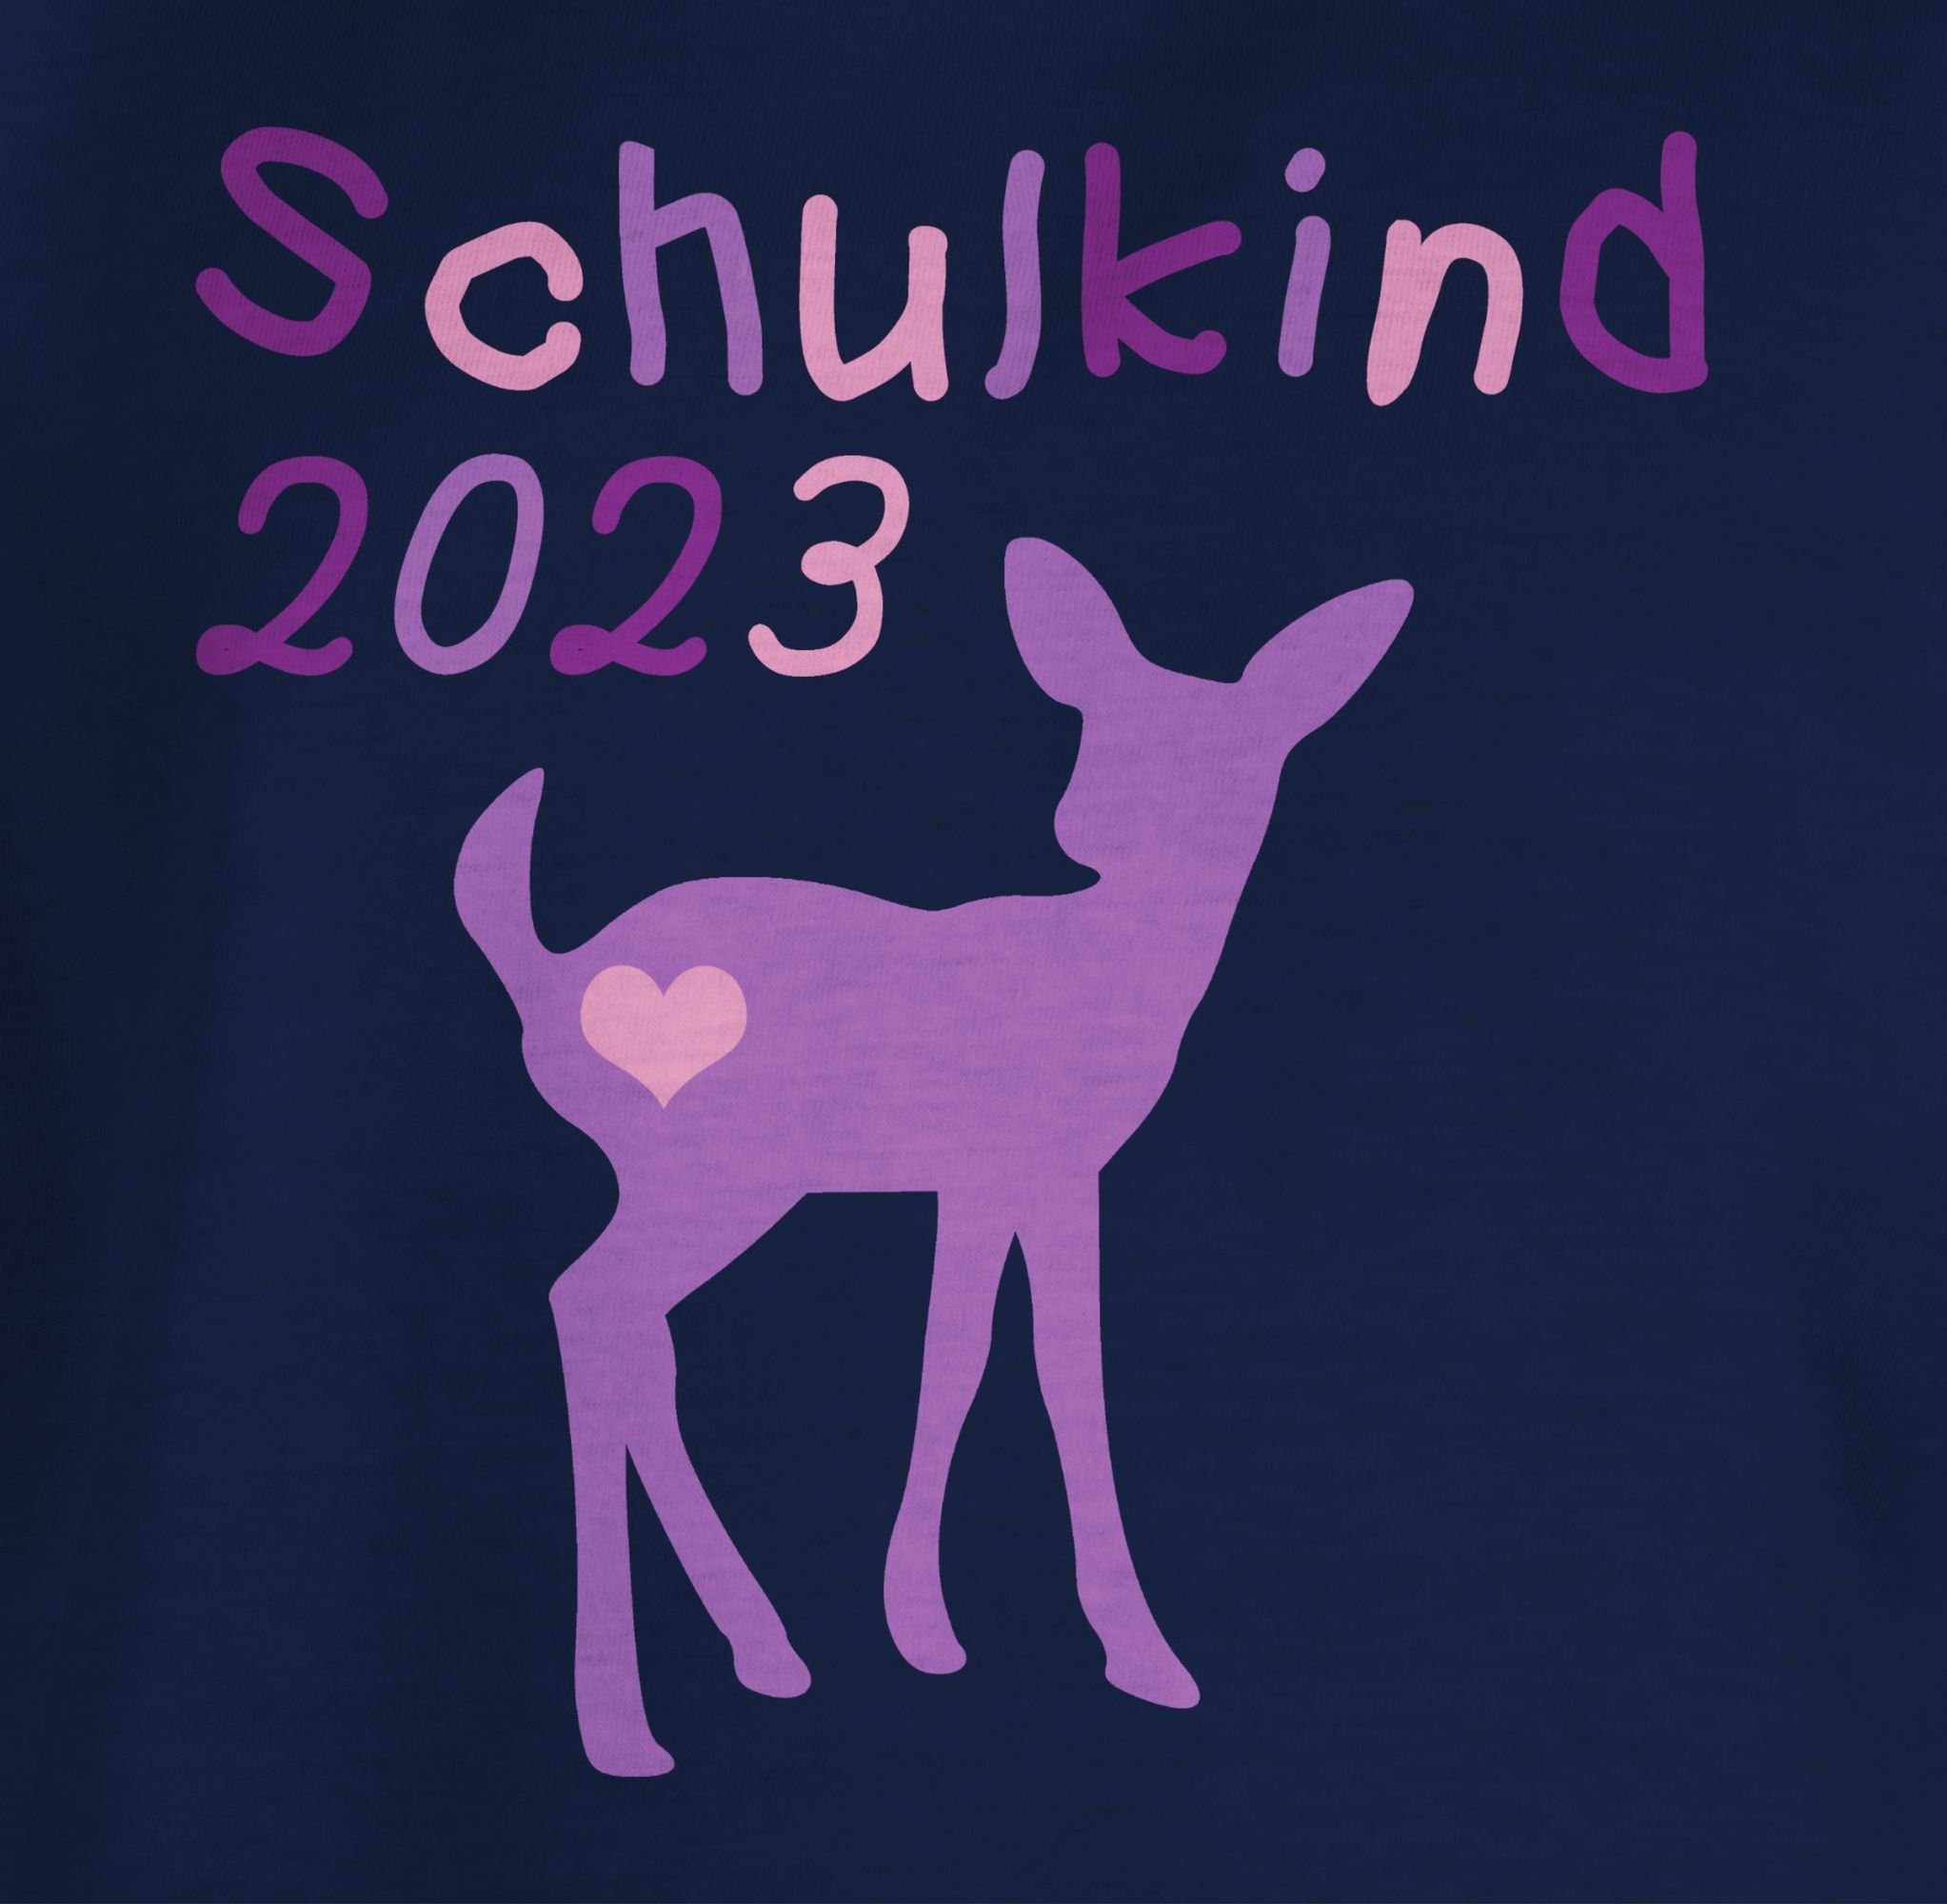 Lila Kitz Dunkelblau 2 Shirtracer Schulkind 2023 Mädchen T-Shirt Einschulung Reh